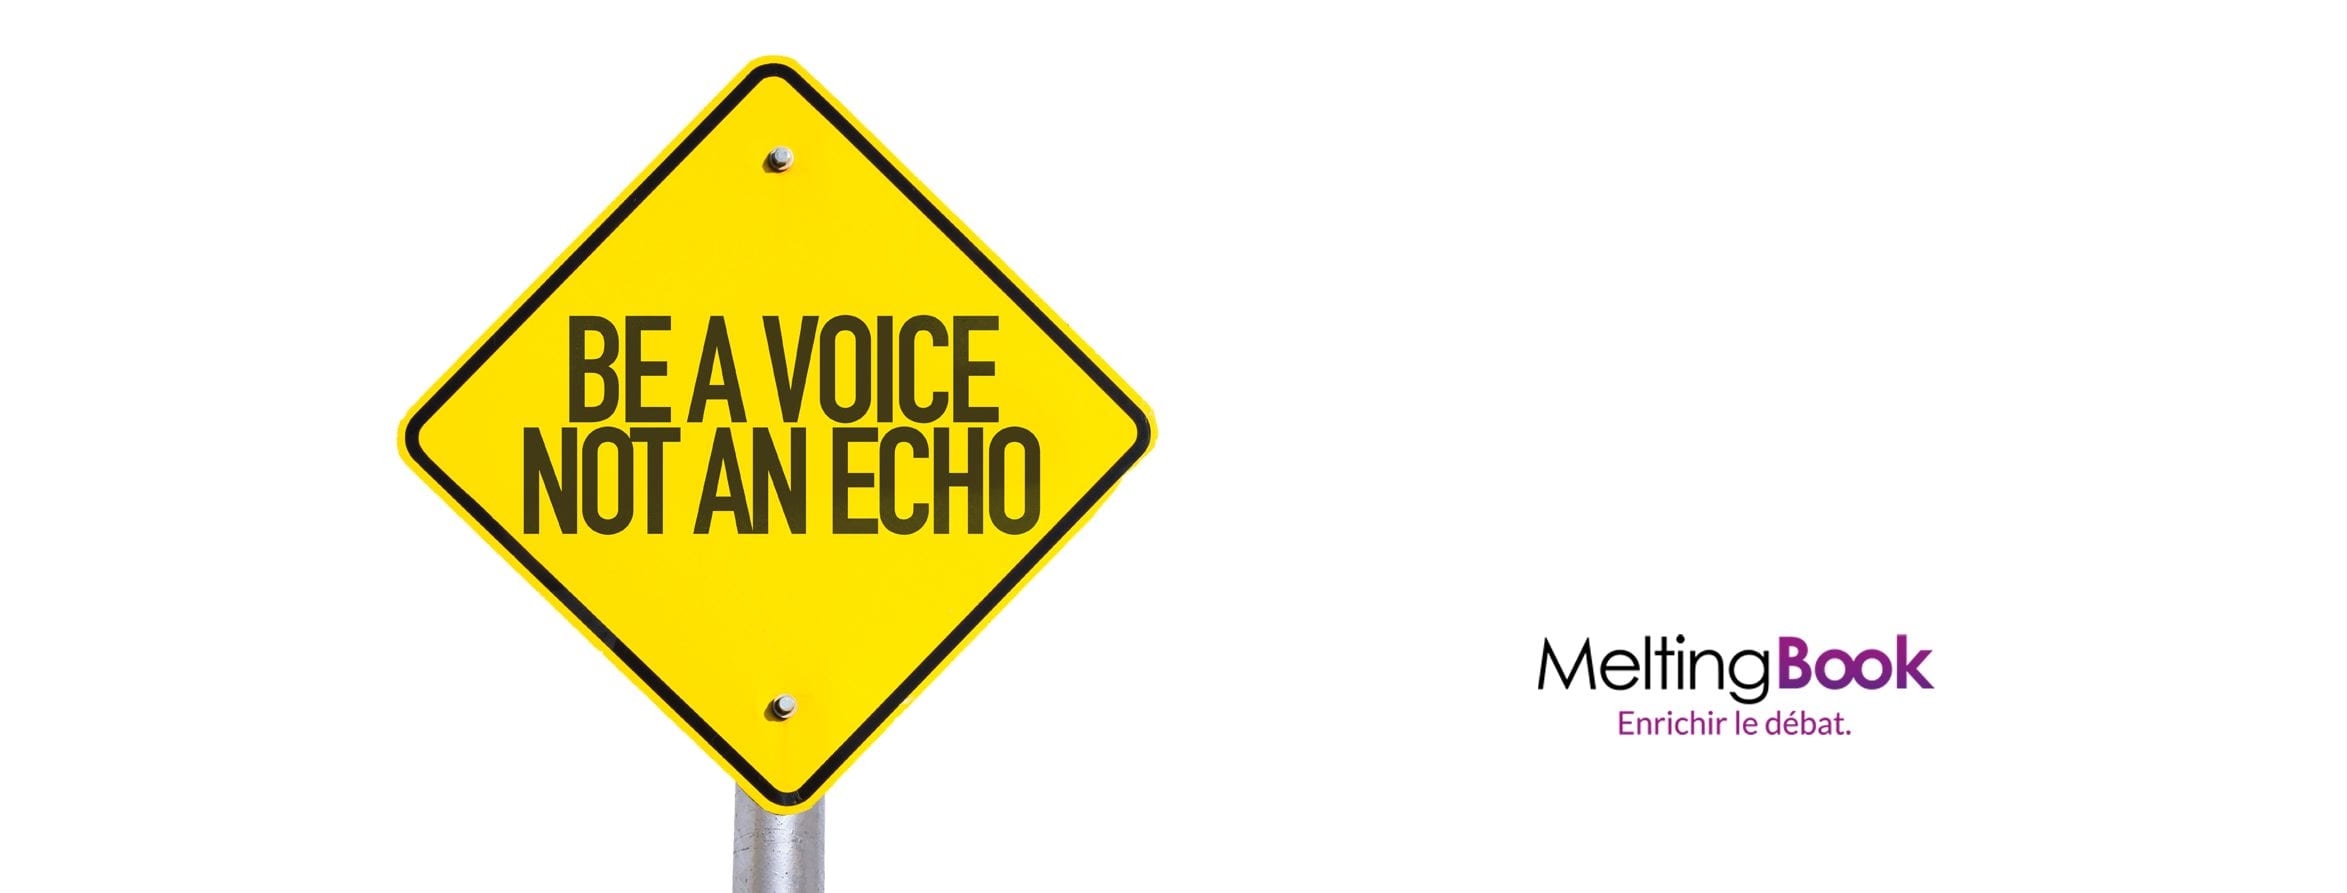 Edito Une Voix Pas Un Echo Meltingbook - the allemand empire roblox